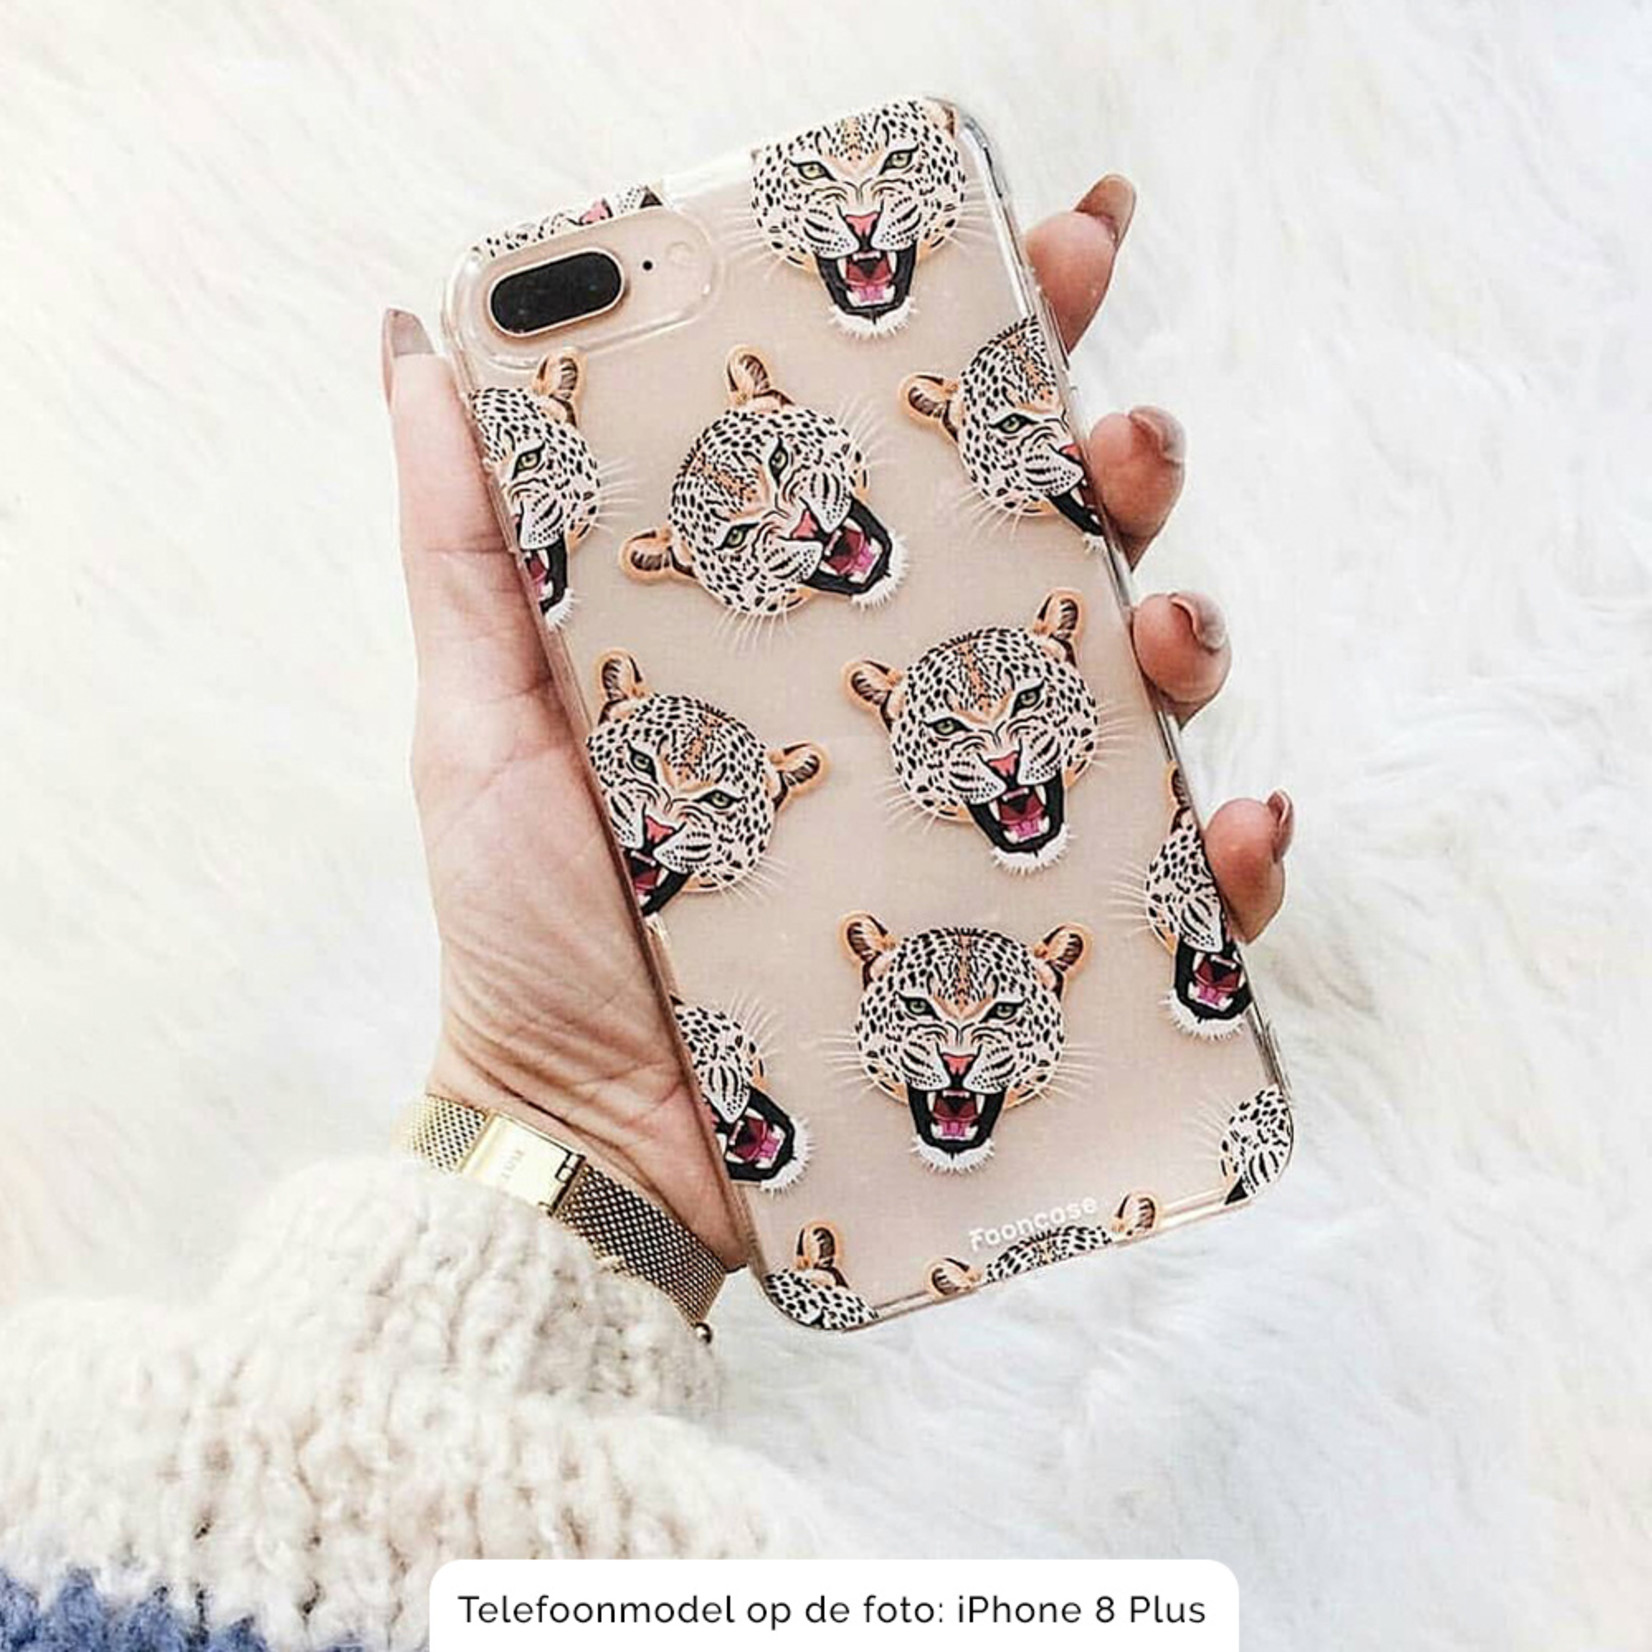 FOONCASE iPhone SE (2020) Case - Cheeky Leopard